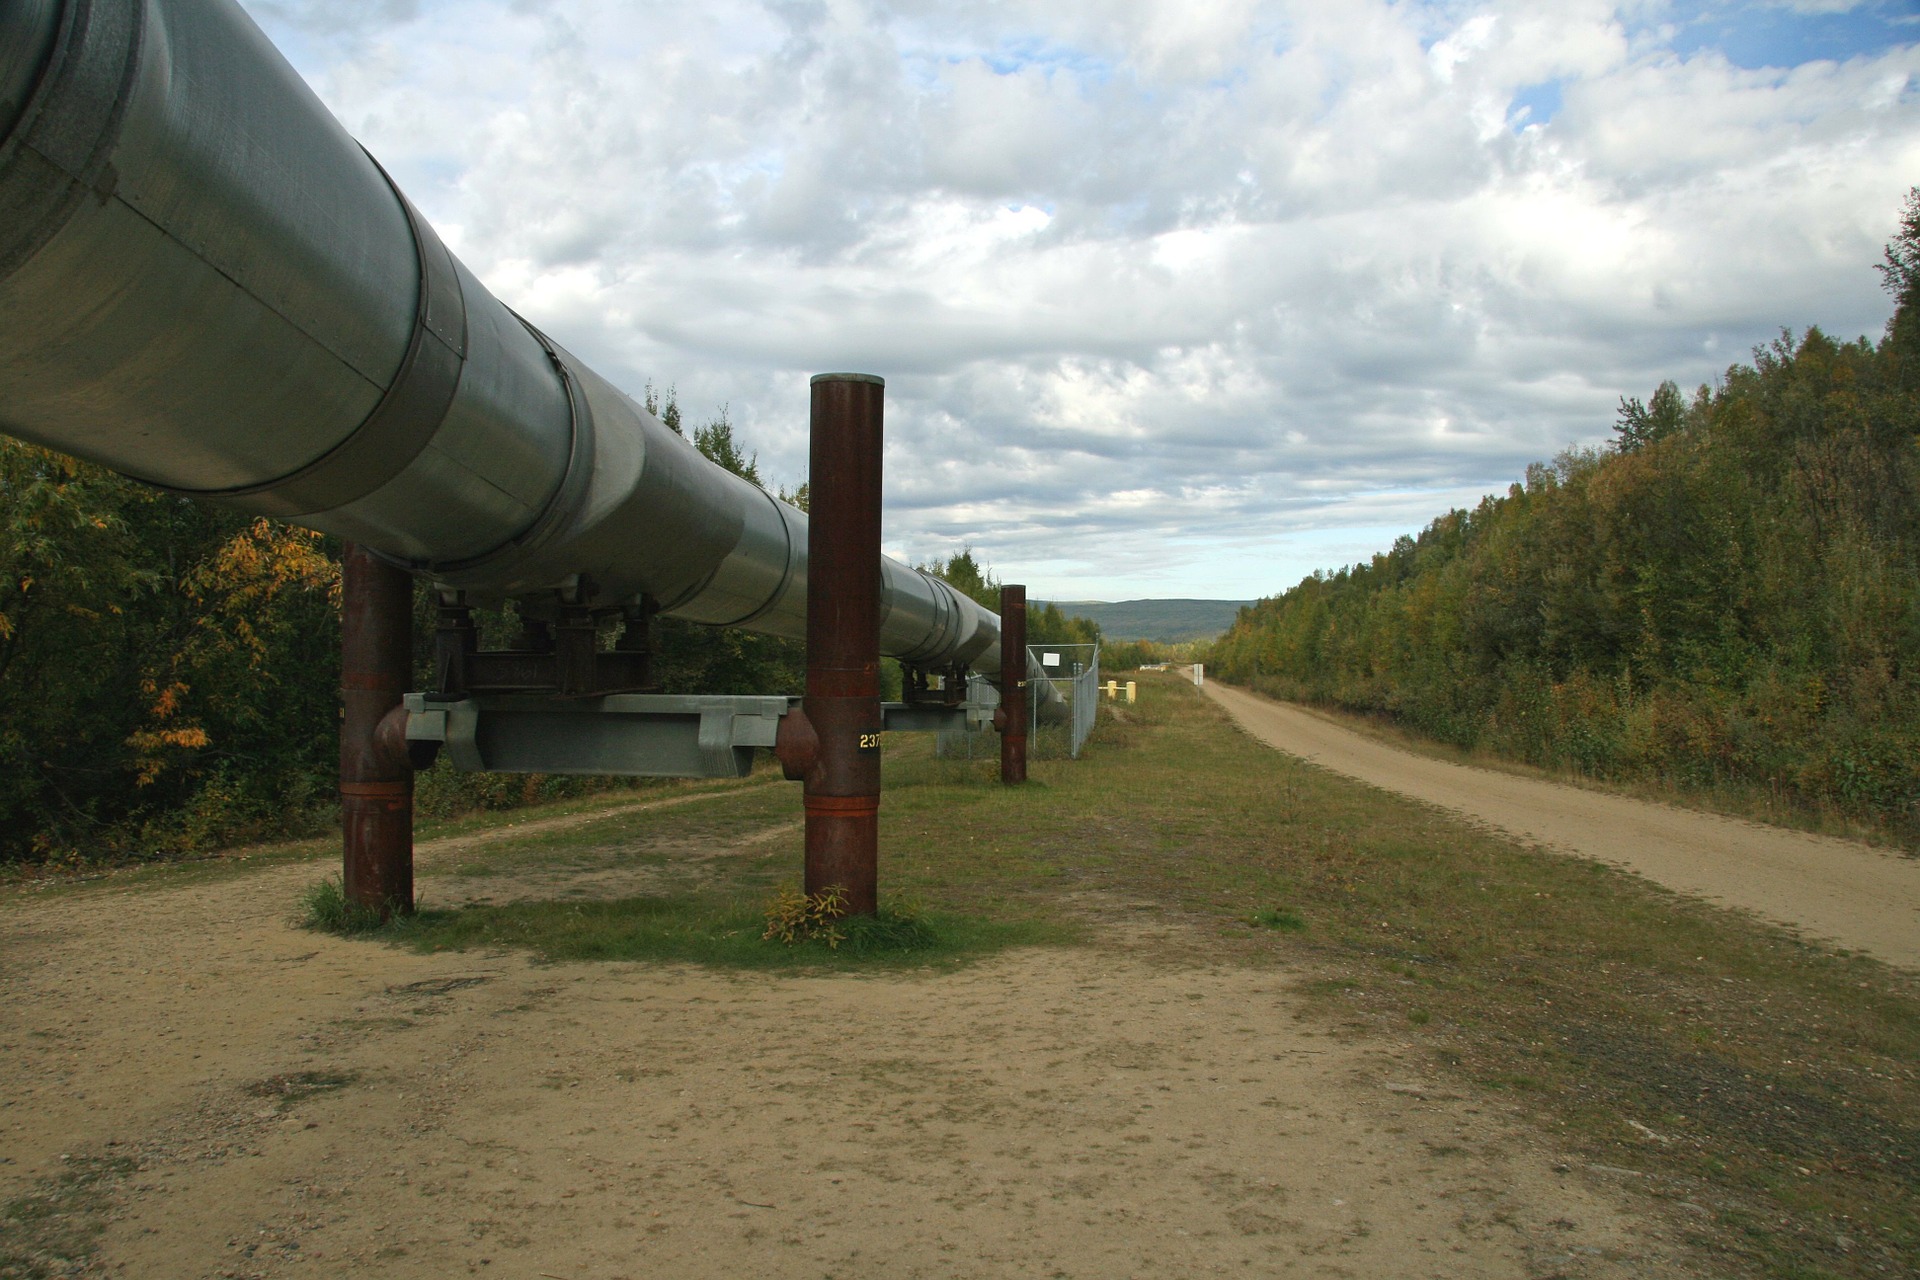 Pläne für neue Gaspipeline können aktuelle Krise nicht lösen